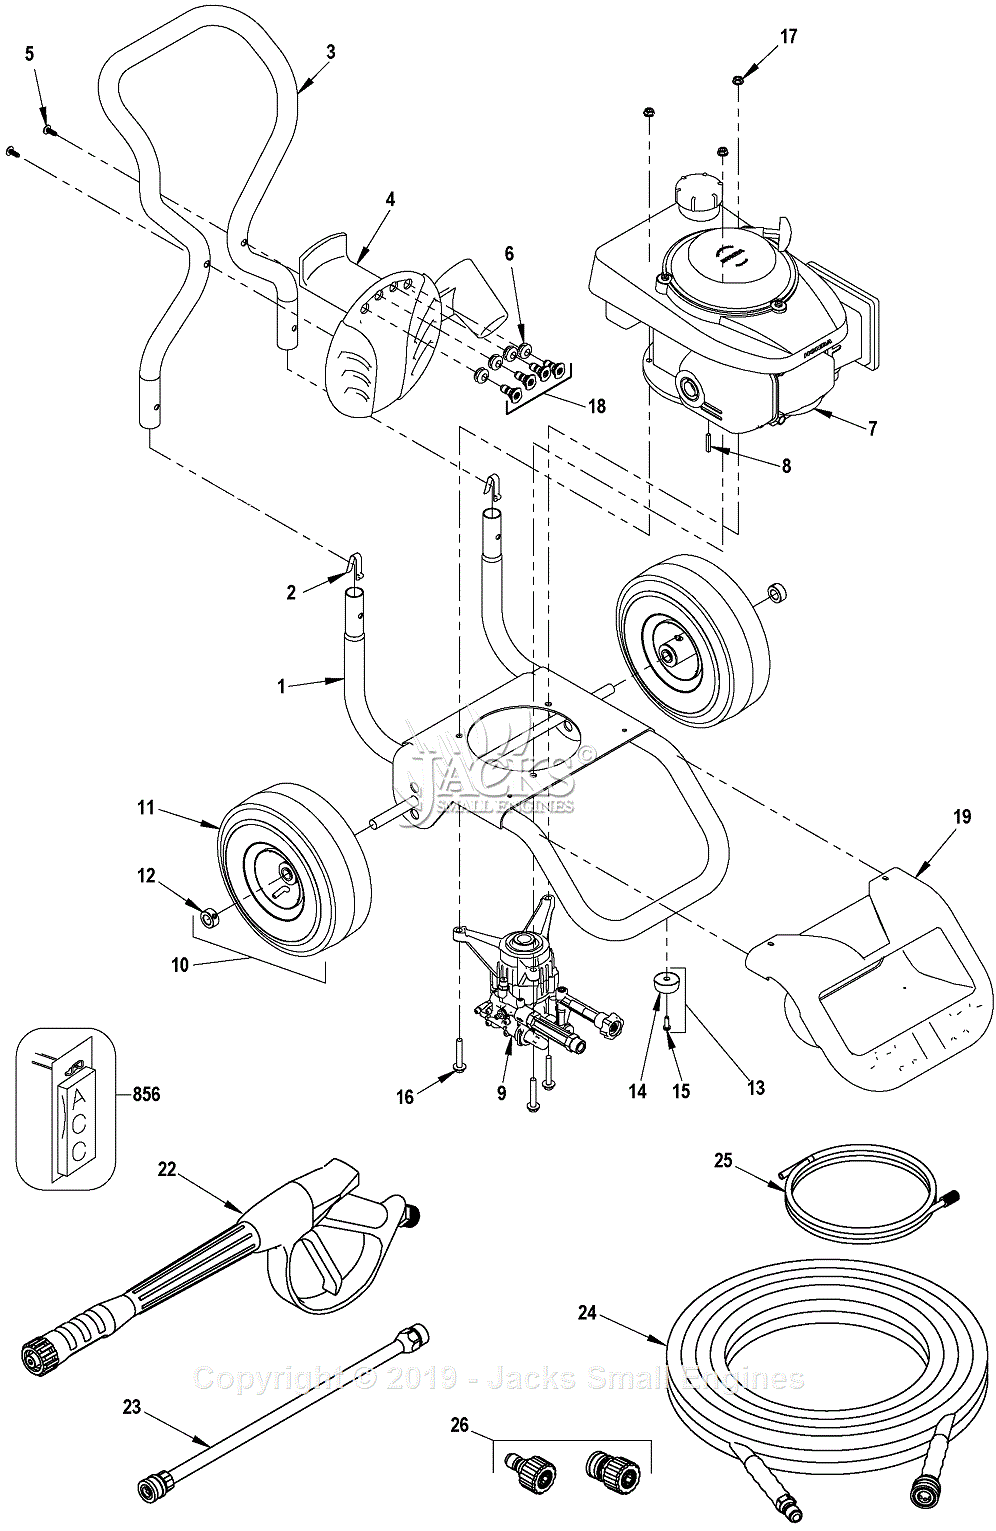 https://az417944.vo.msecnd.net/diagrams/manufacturer/black-decker/pressure-washer/bdg2600-b3-type-1/pressure-washer/diagram_1.gif